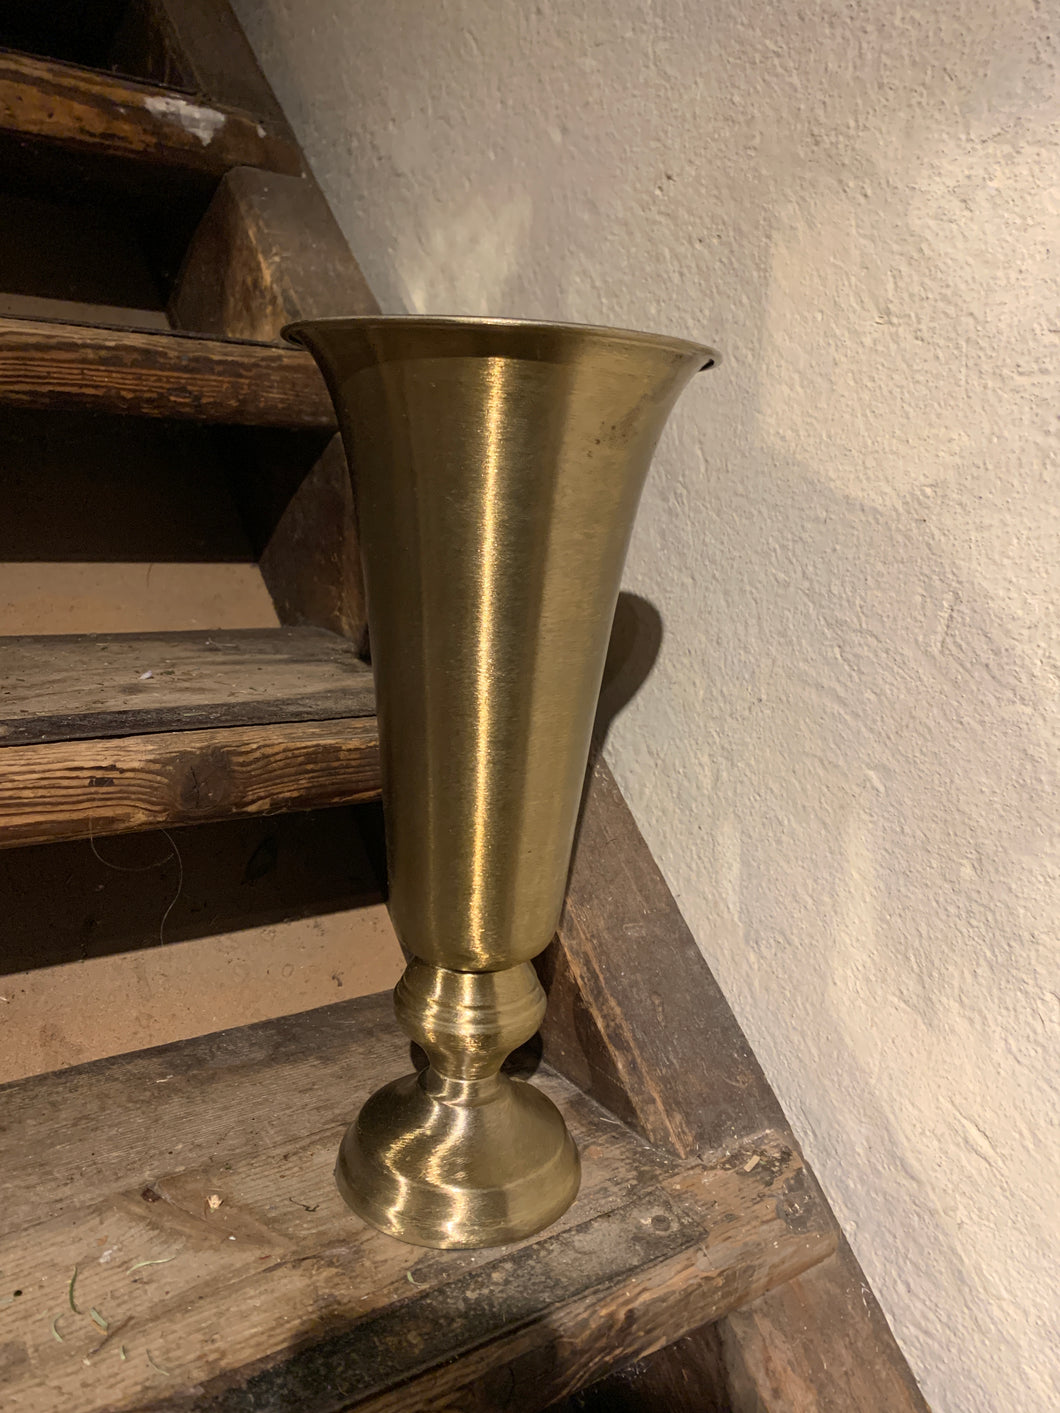 Vase/urne